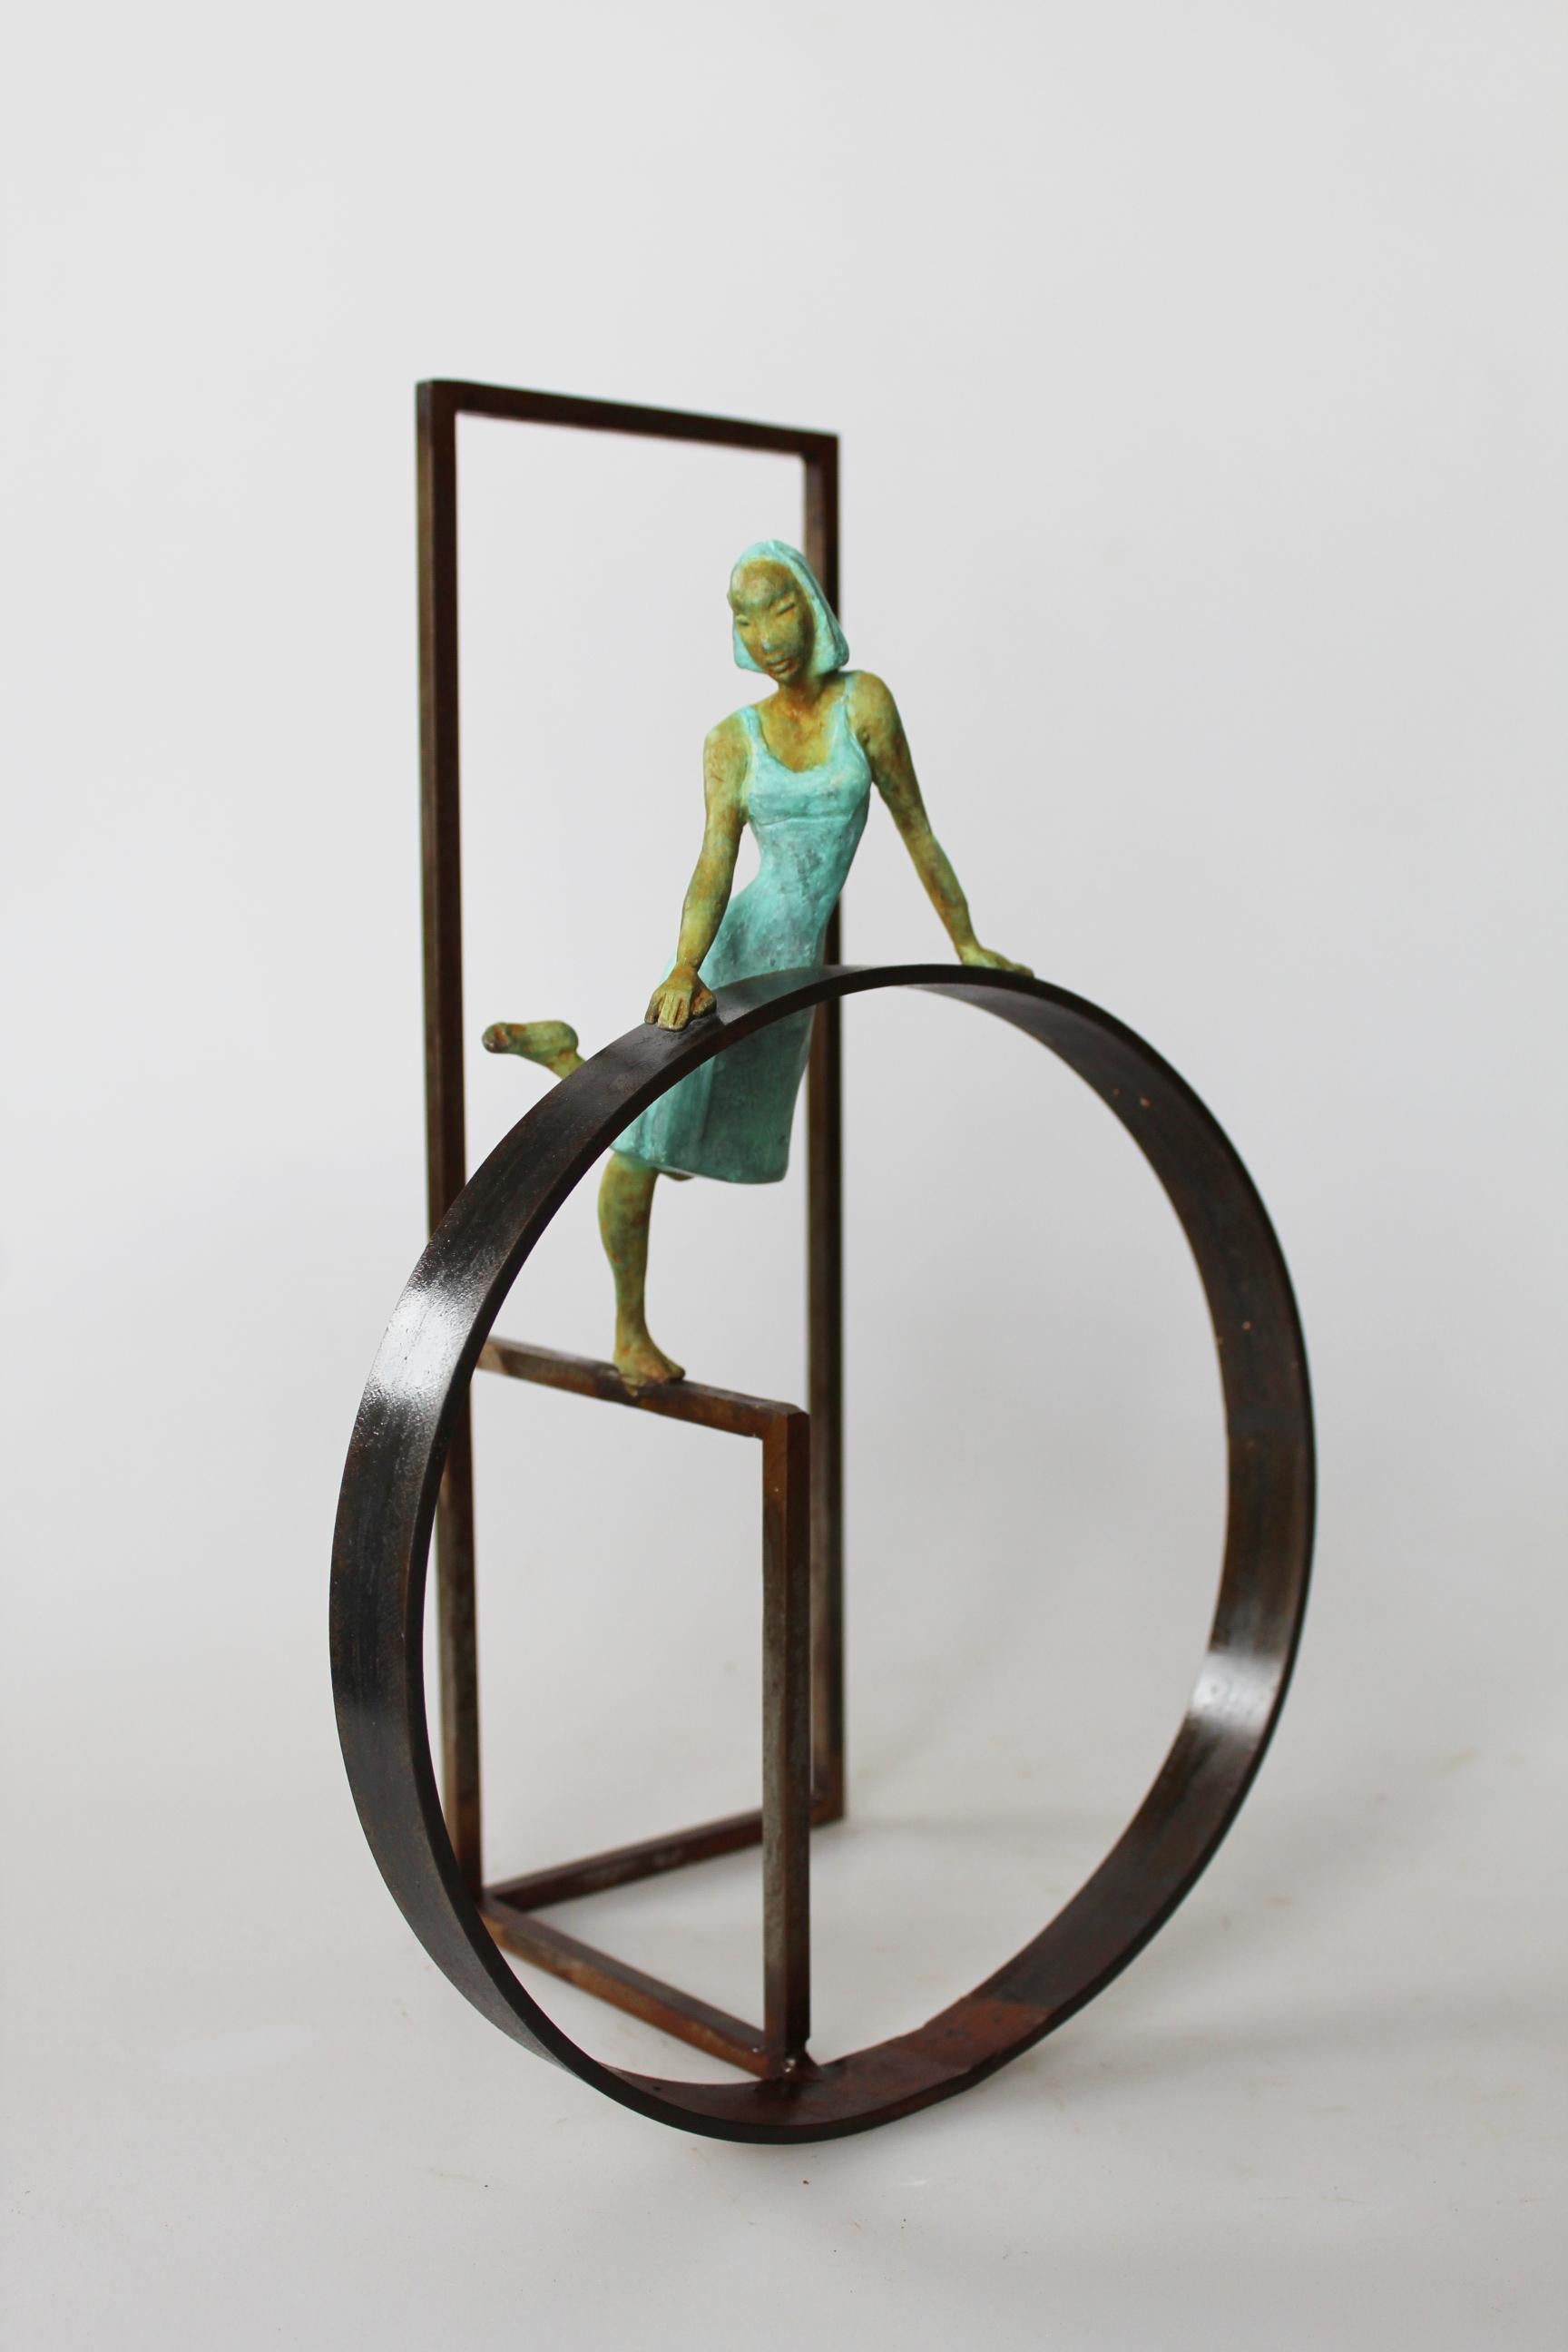 Joan Artigas Planas Figurative Sculpture - "Cuba Salsa II" contemporary bronze table, mural sculpture figurative dancing